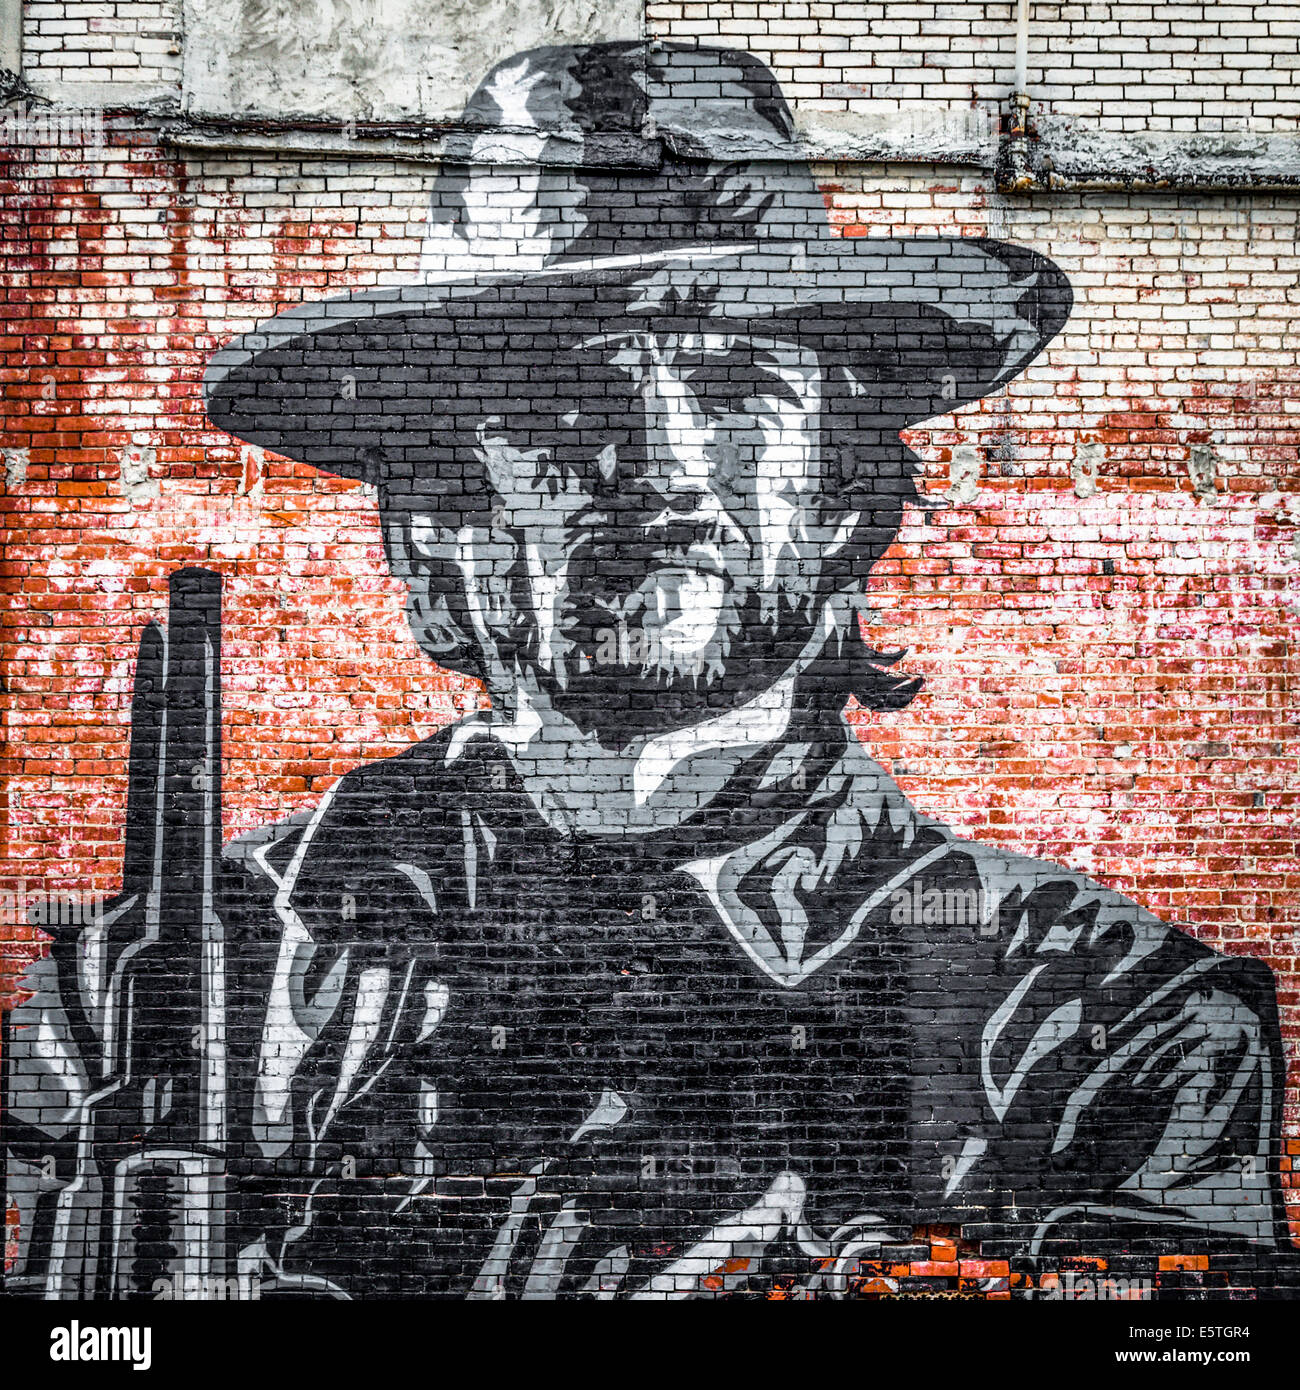 Arte en la calle, mural de un vaquero en una pared de ladrillo, Clarksdale, Mississippi, Estados Unidos Foto de stock